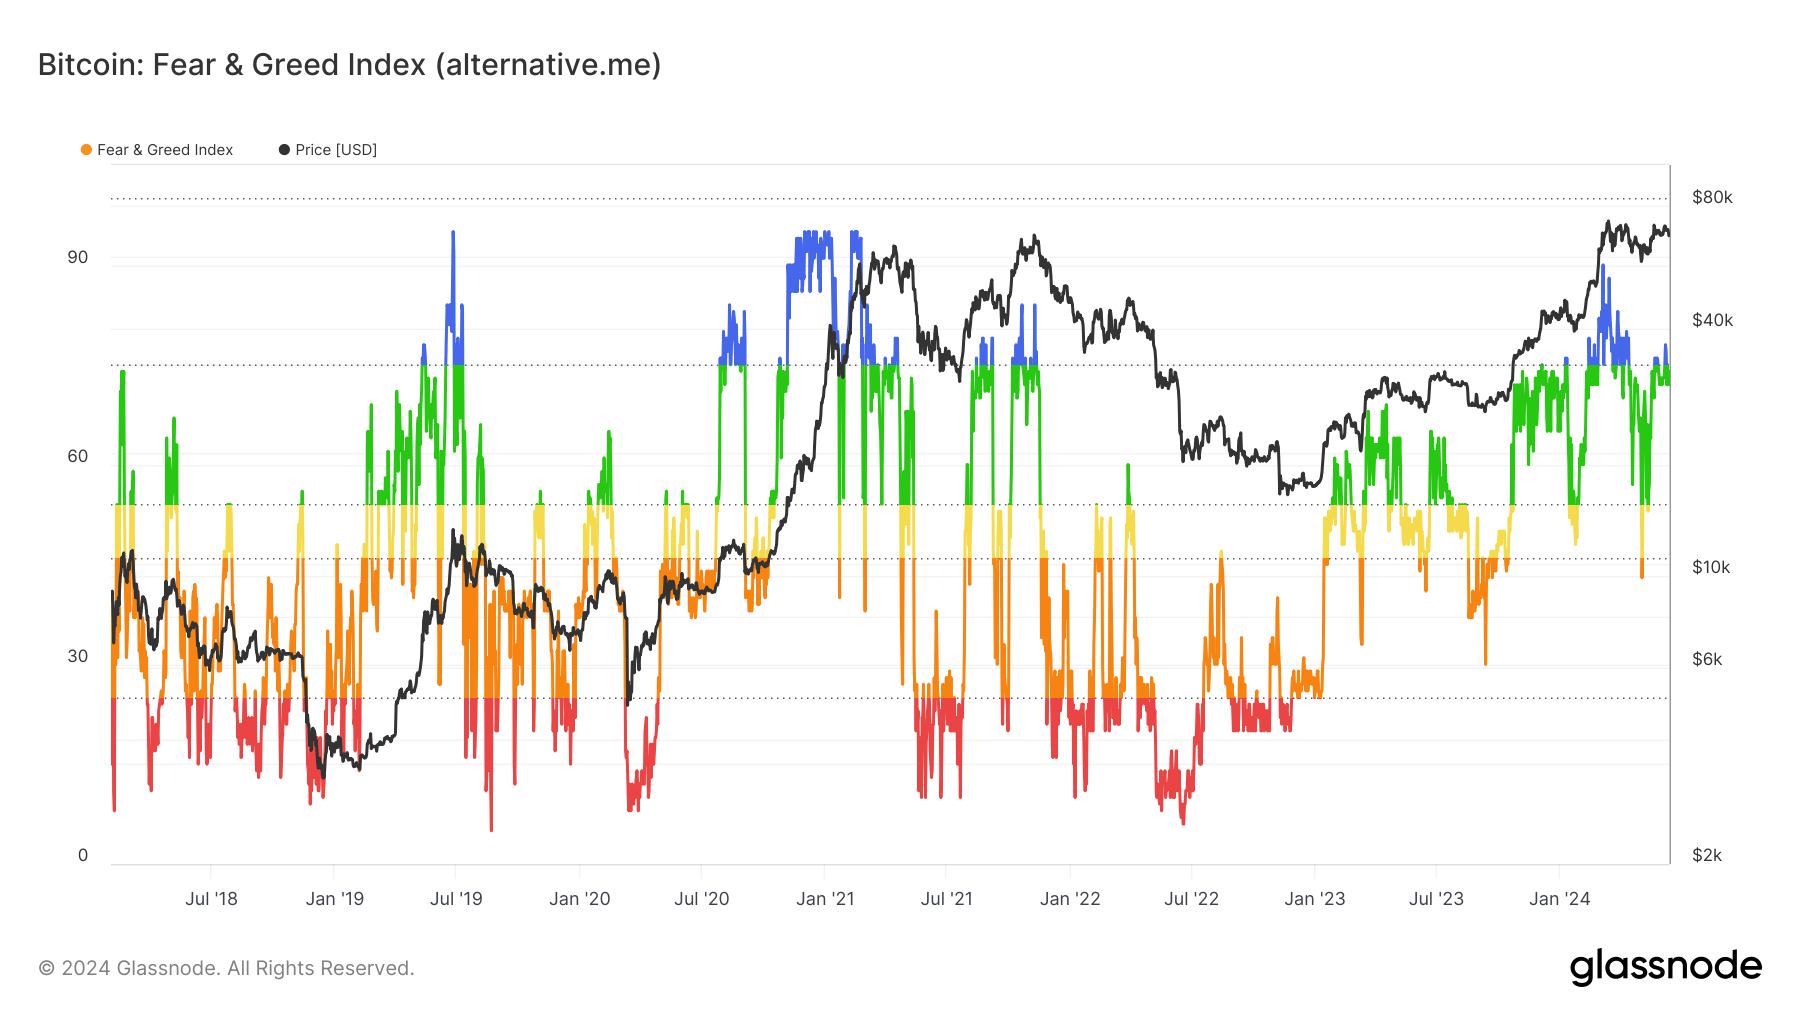 Le Crypto Fear and Greed Index est dans l'euphorie actuellement, dans des conditions de marché haussier.